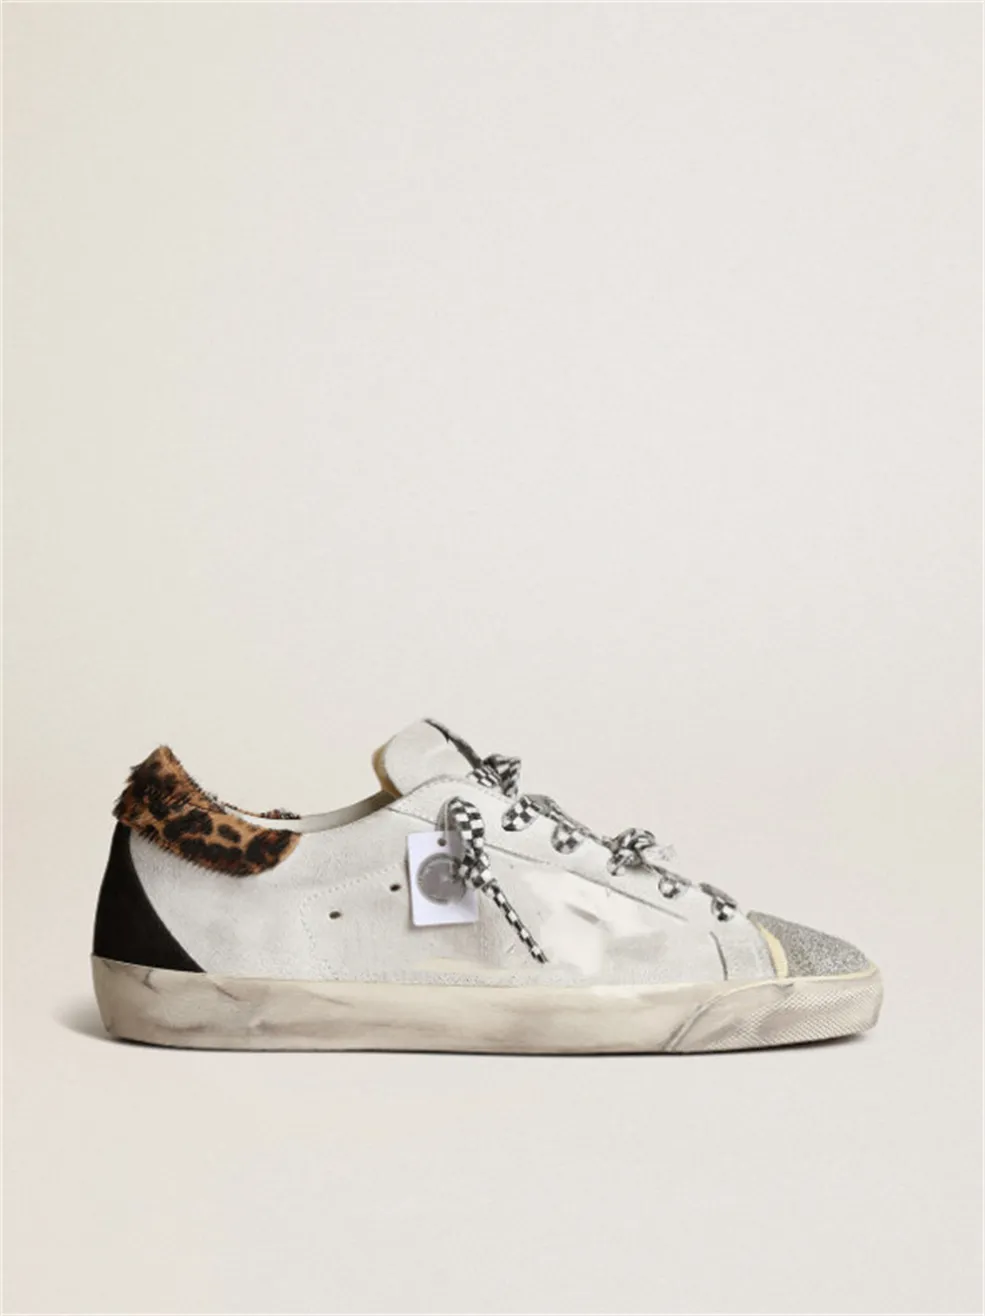 Sole küçük kirli ayakkabılar tasarımcı lüks İtalyan vintage el yapımı spor ayakkabılar beyaz deri ile kesilmiş